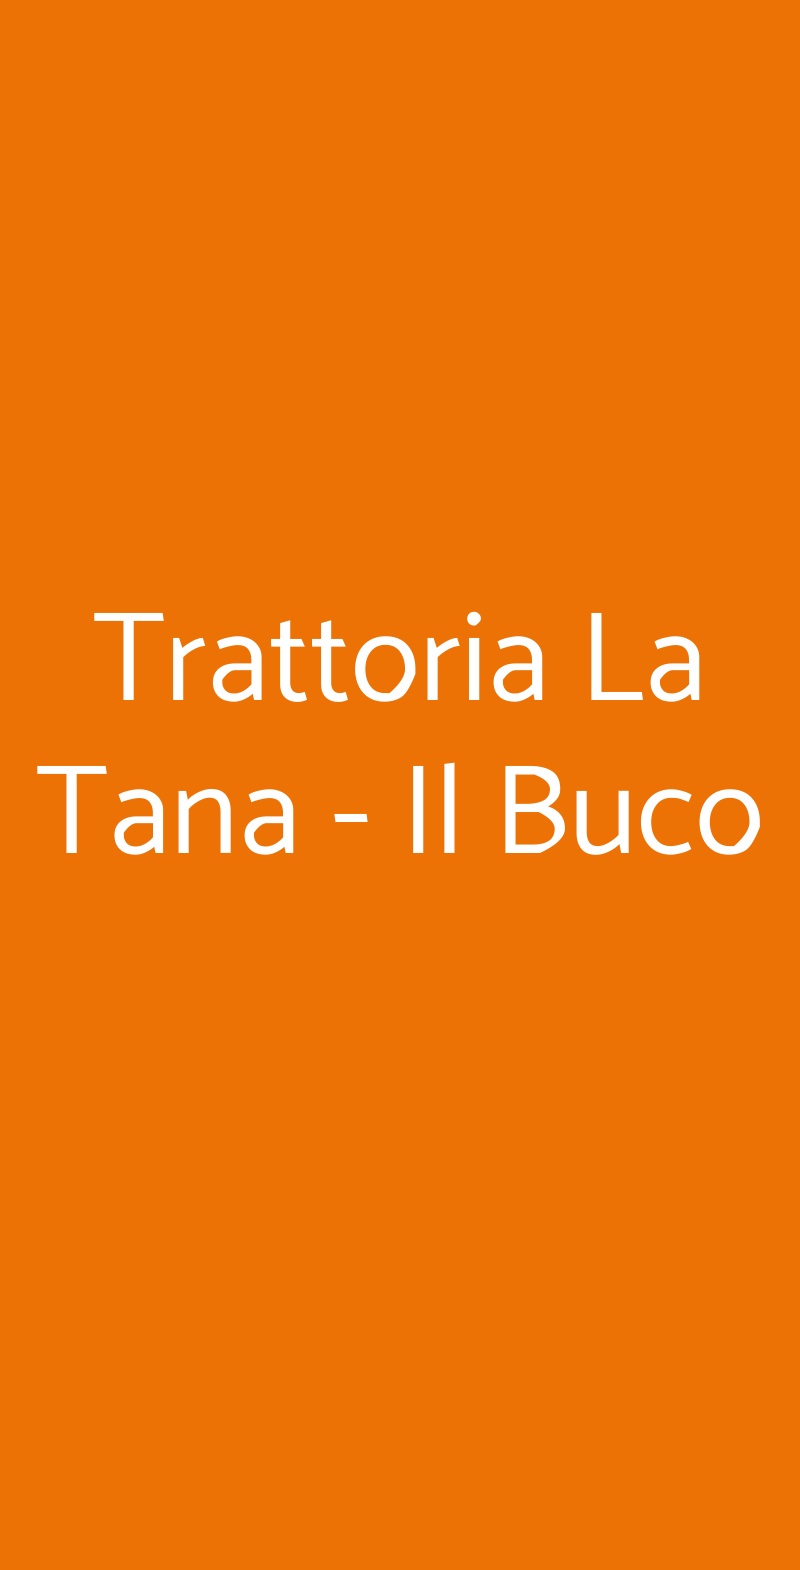 Trattoria La Tana - Il Buco Monforte San Giorgio menù 1 pagina